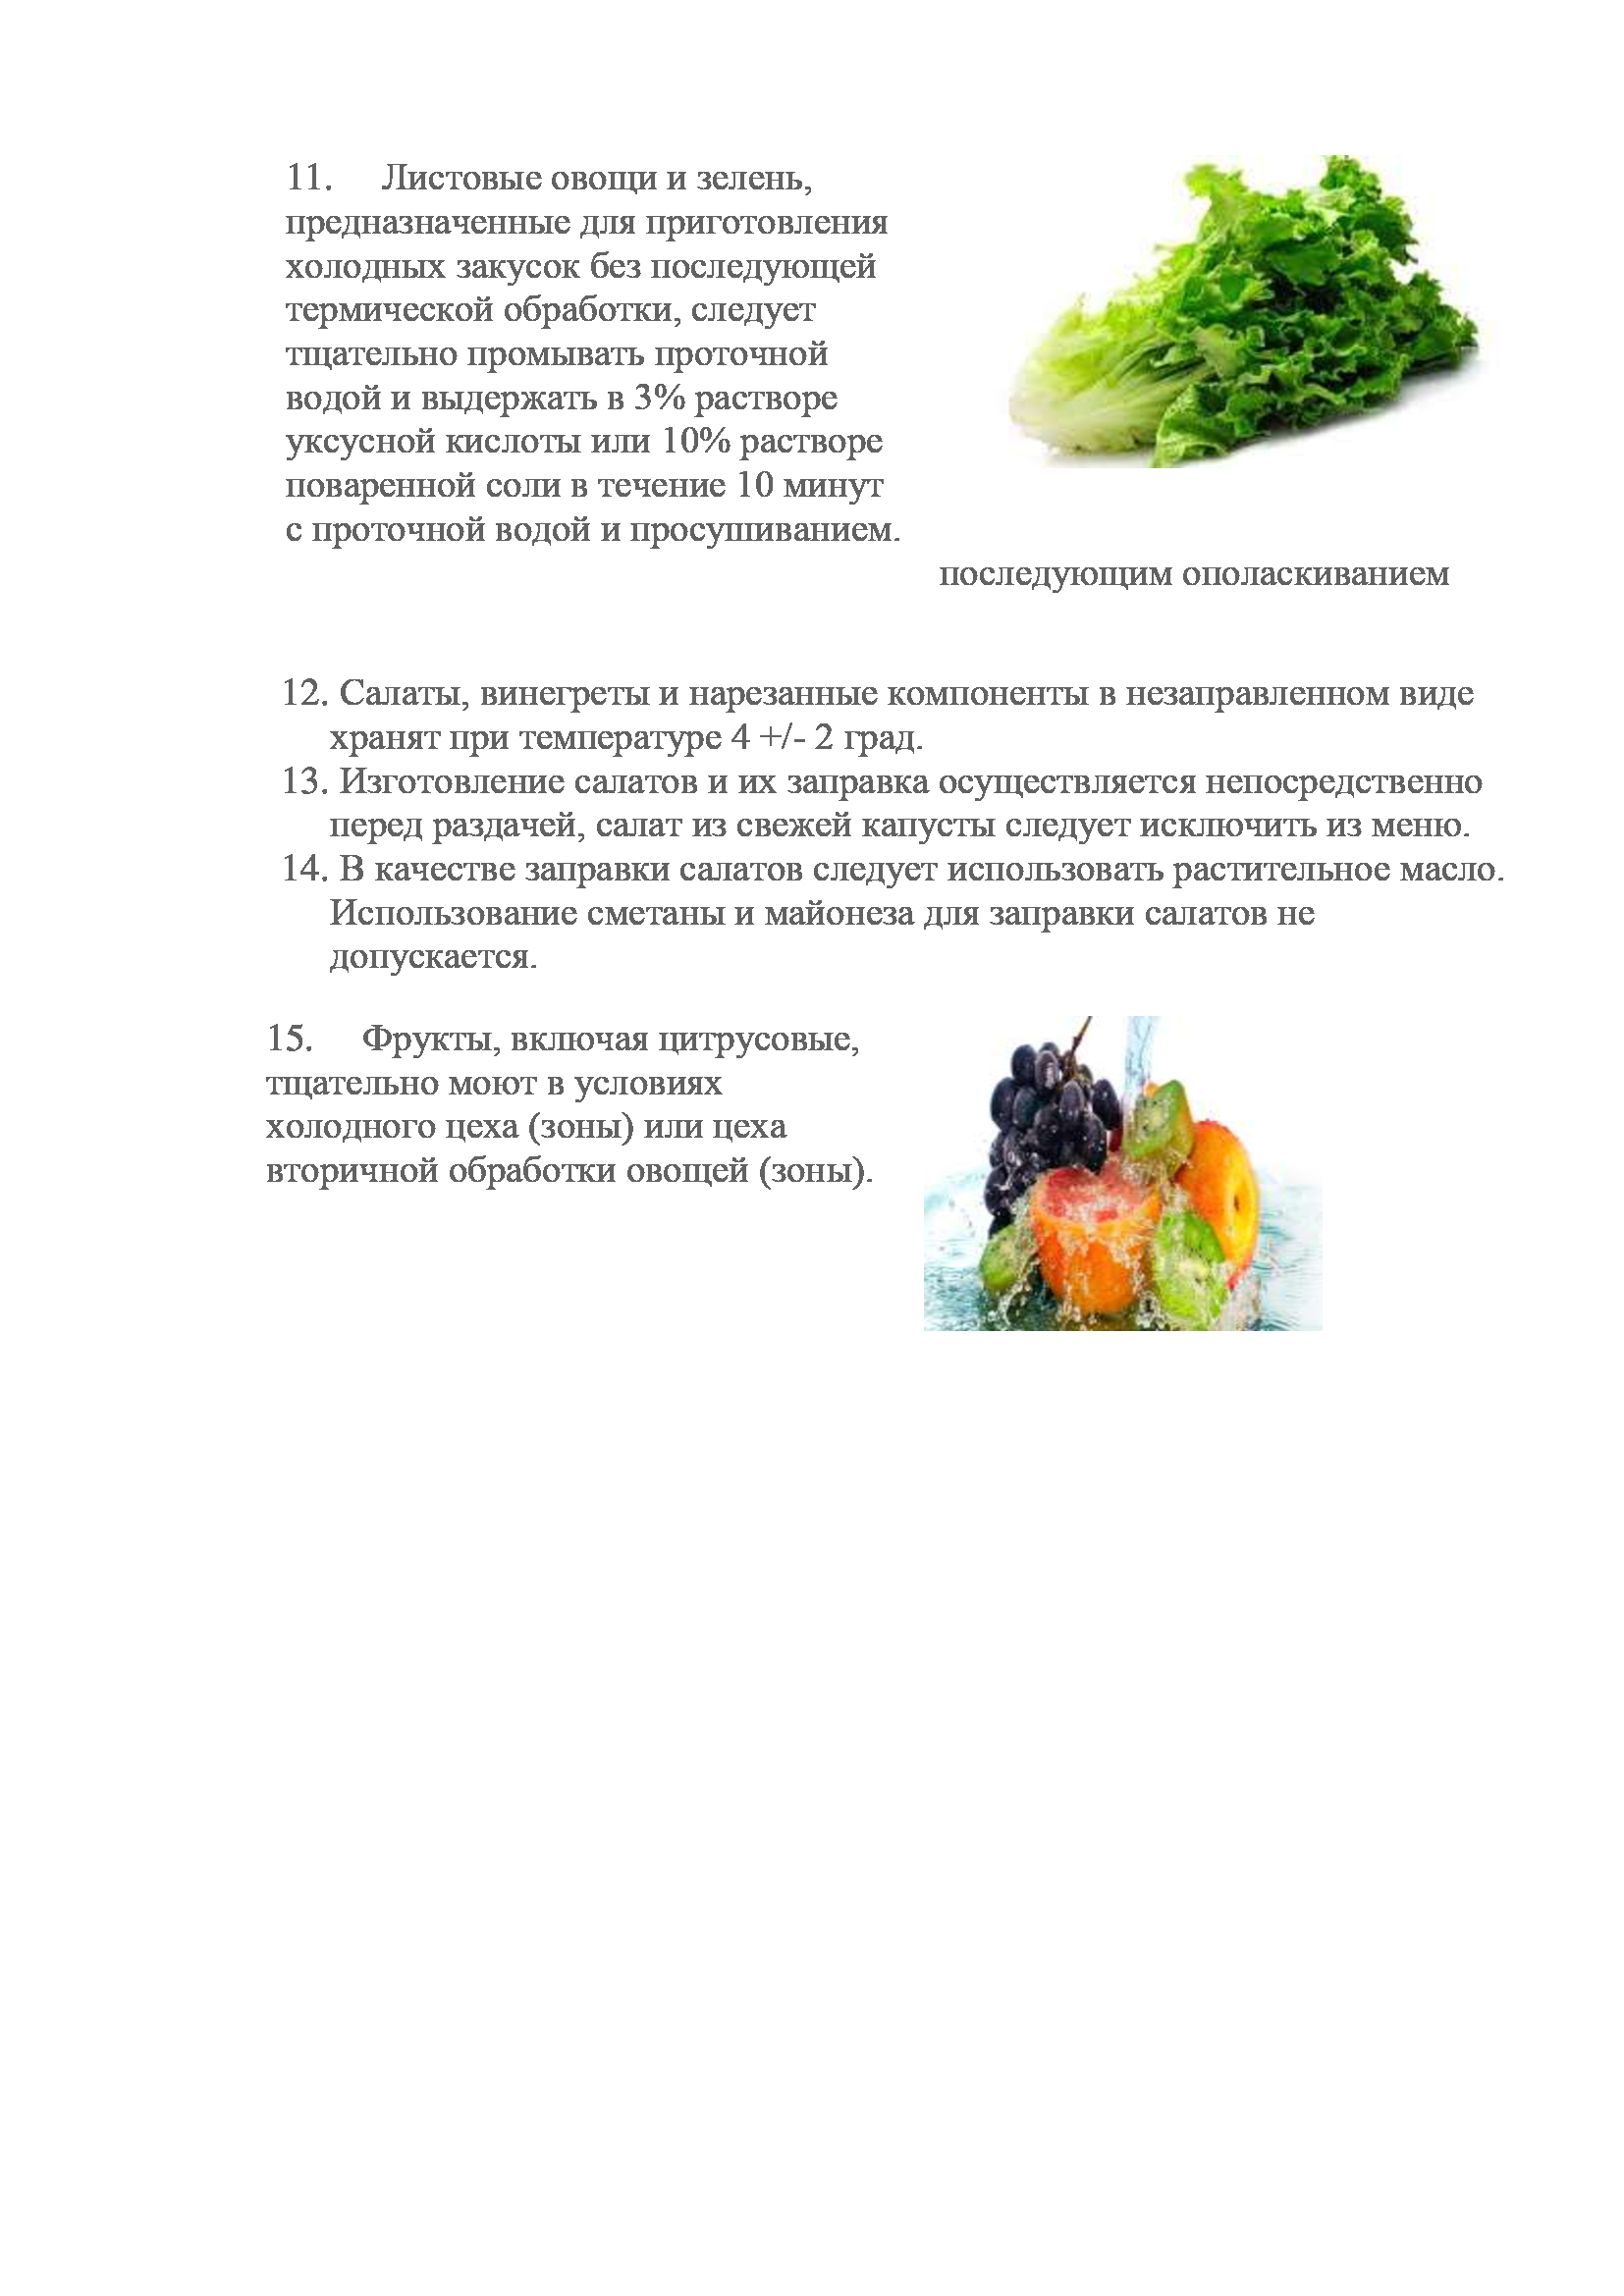 Инструкция по обработке ягод, овощей и фруктов